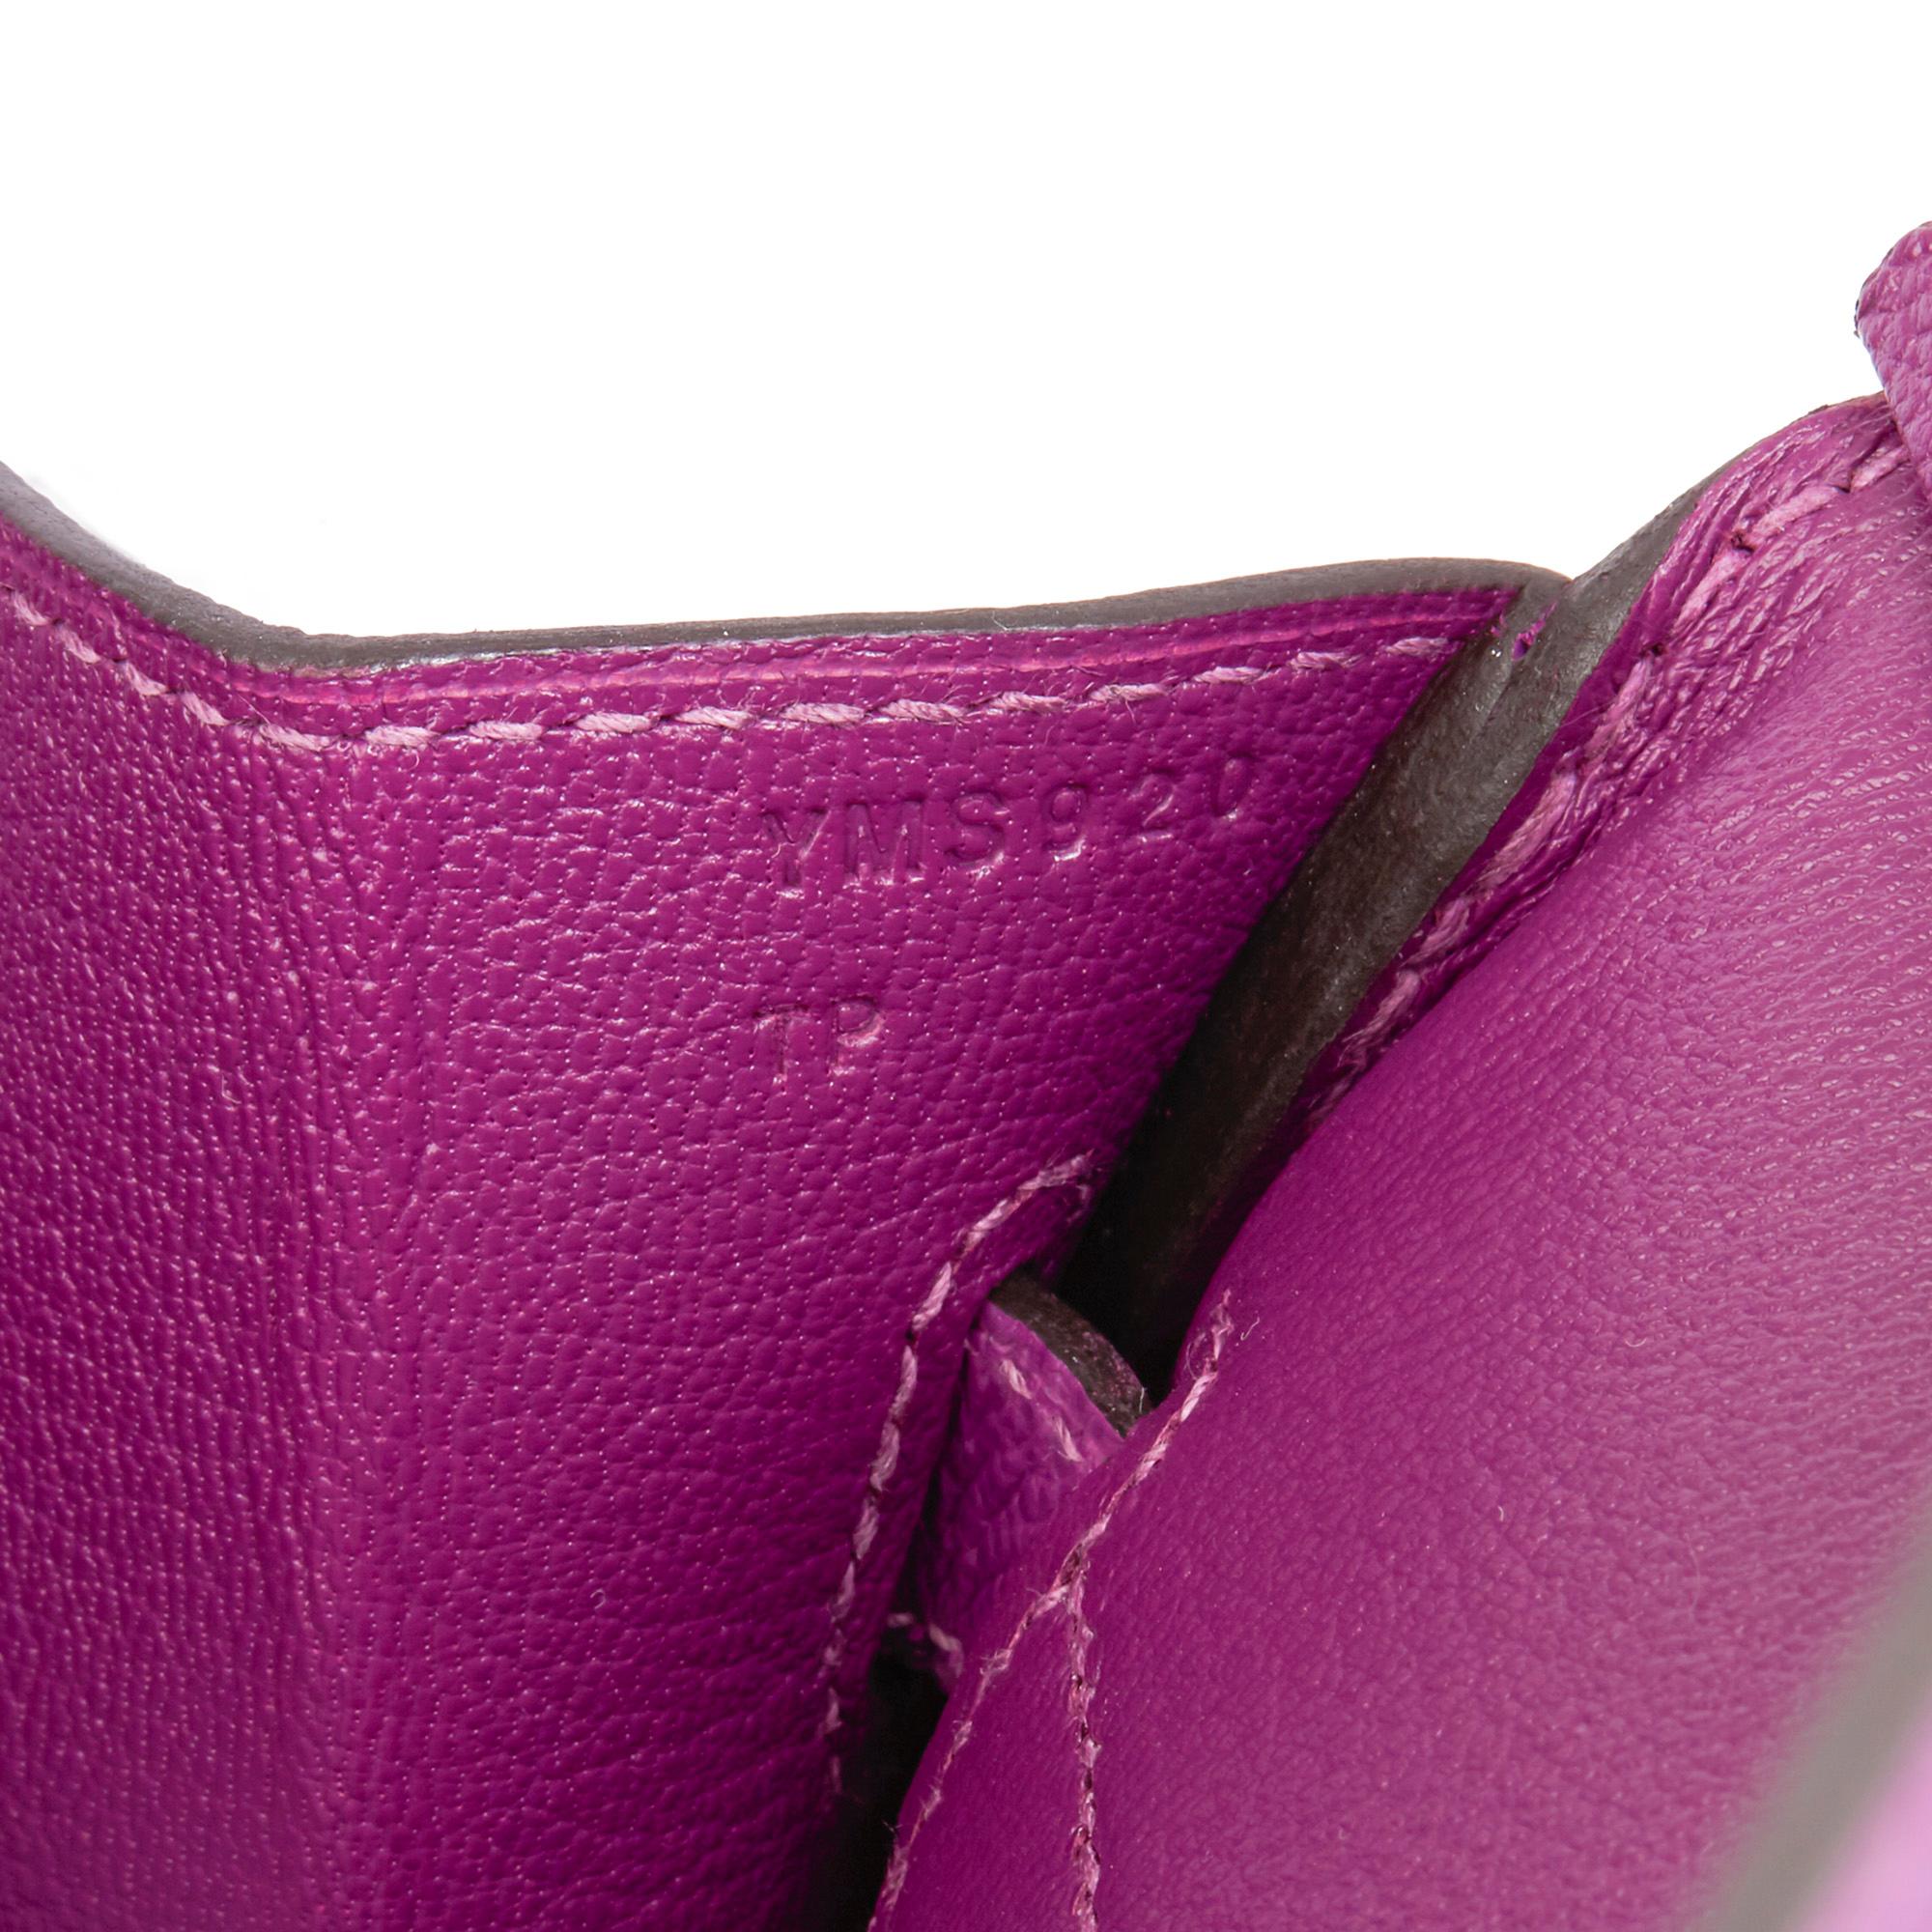 2020 Hermès Anemone Epsom Leather Birkin 30cm 4